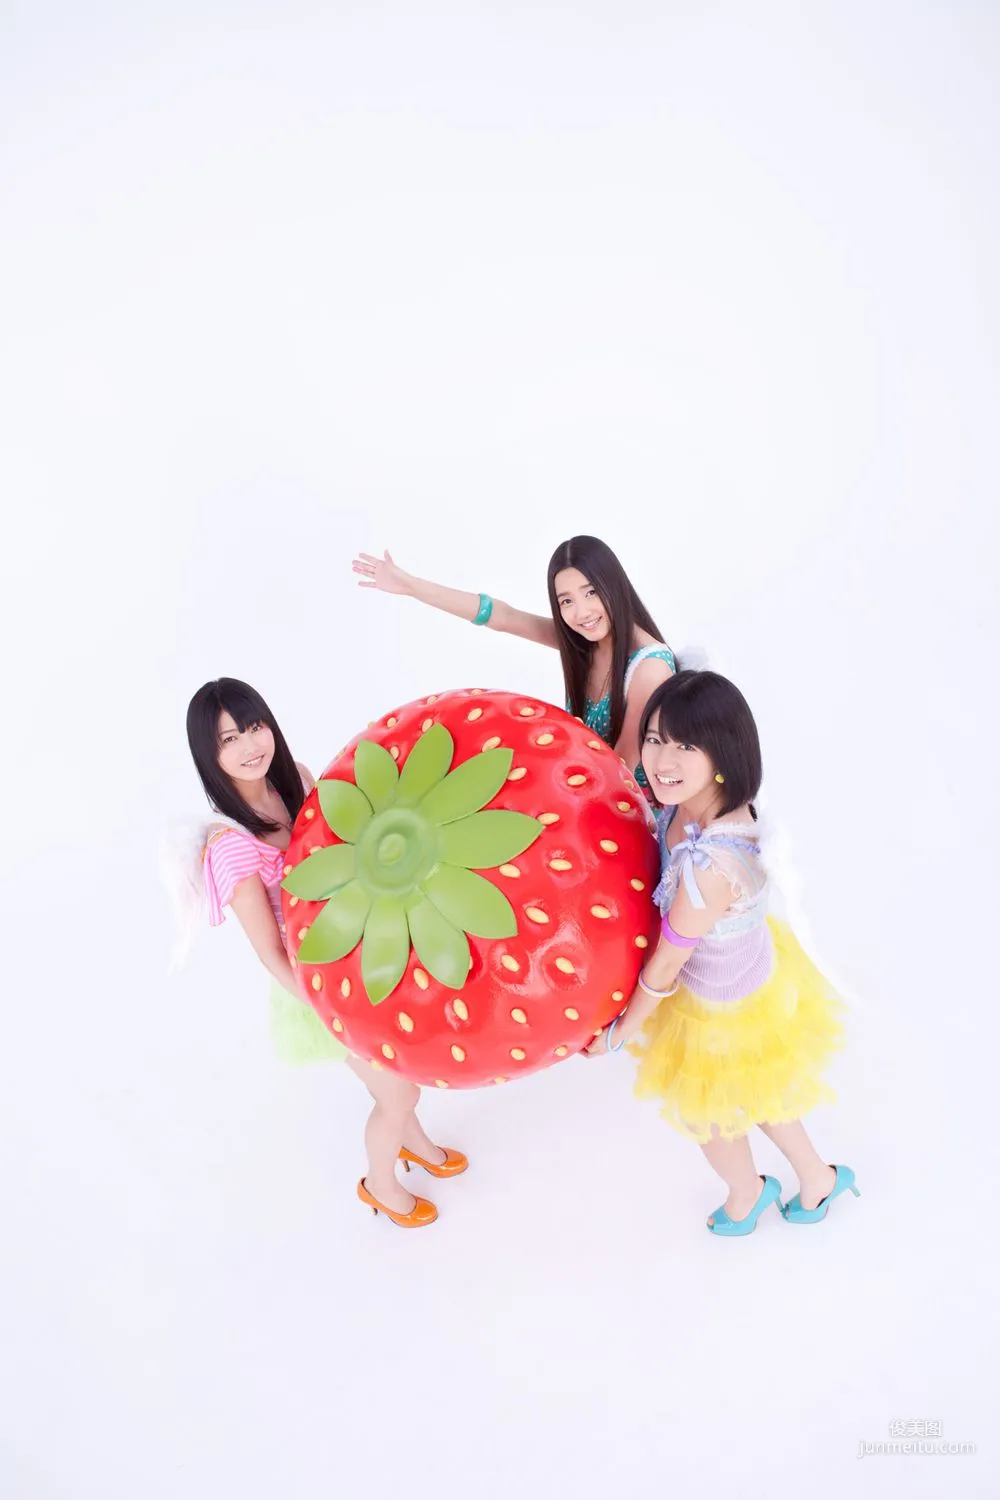 AKB48《AKB48女子会へようこそ》写真集 [YS Web] Vol.48910